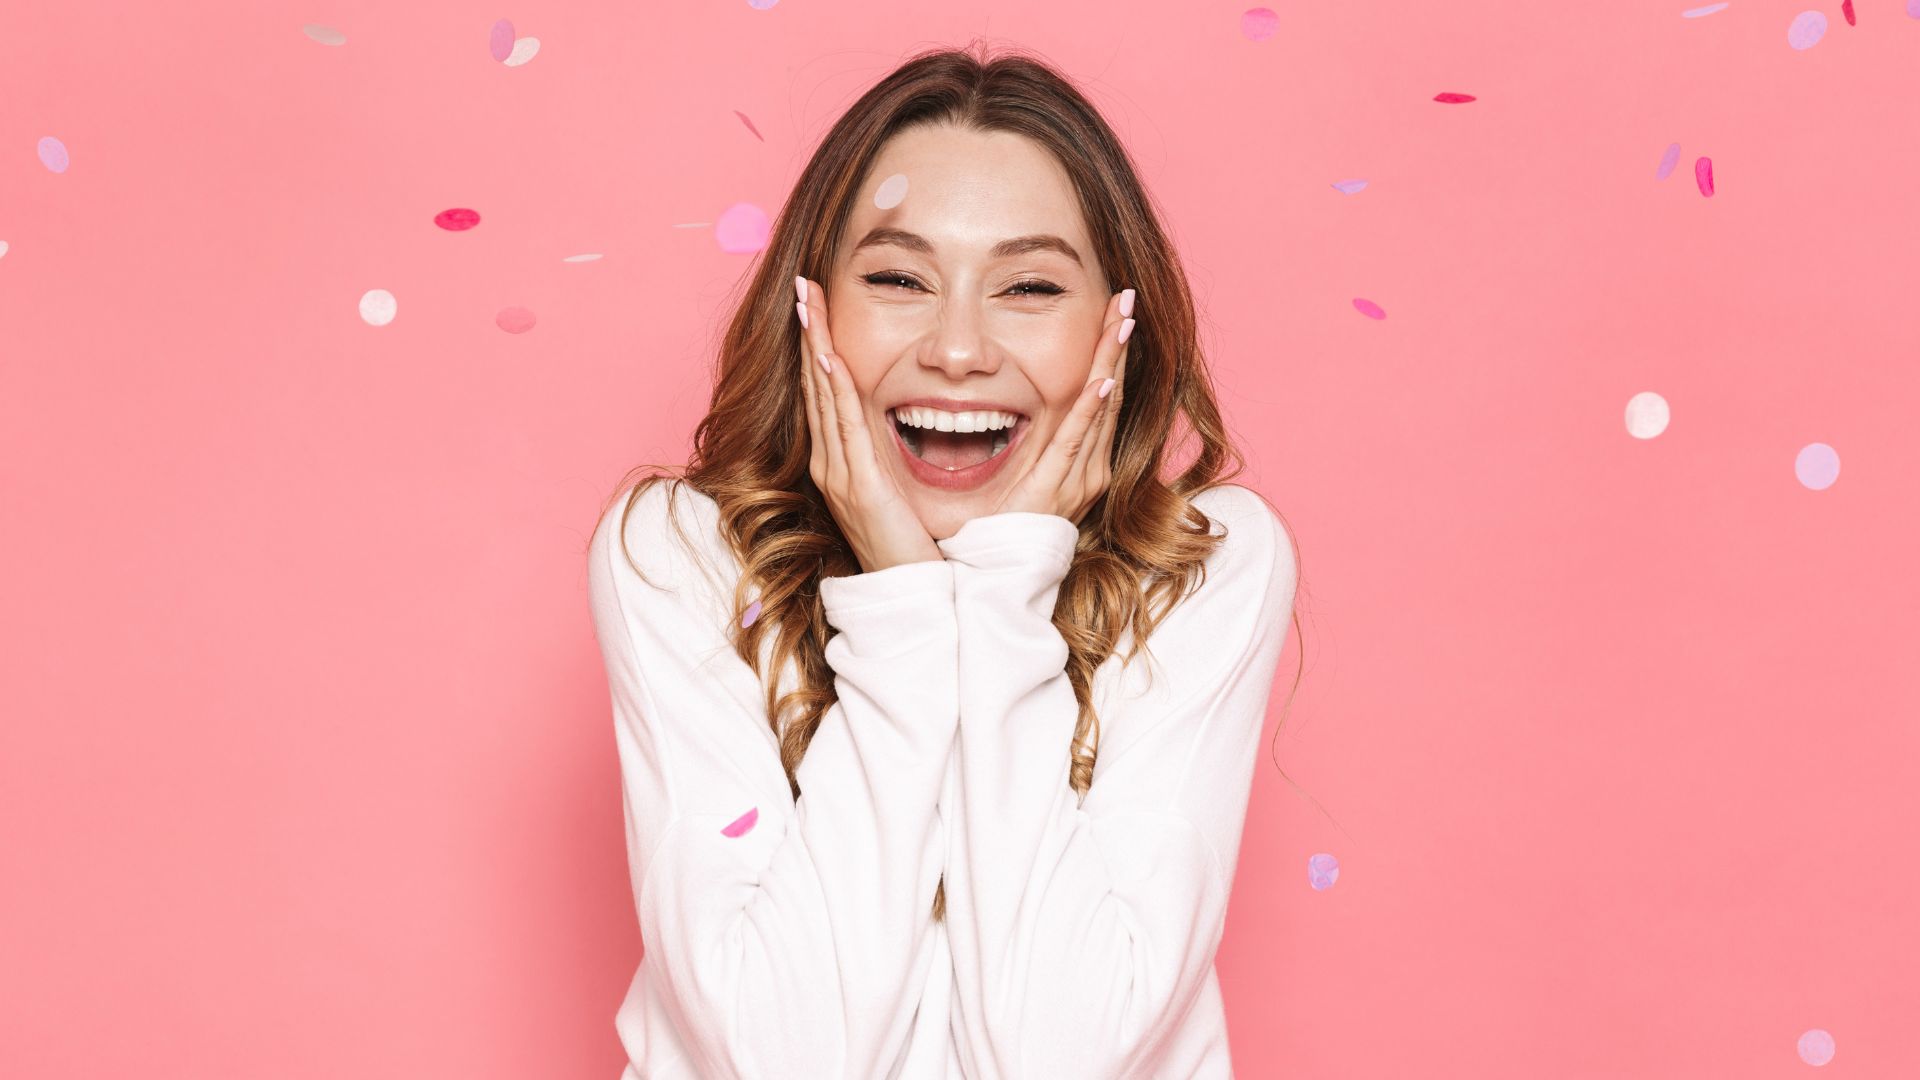 Imagem de uma mulher sorrindo em um fundo rosa e confetes caindo sobre elas